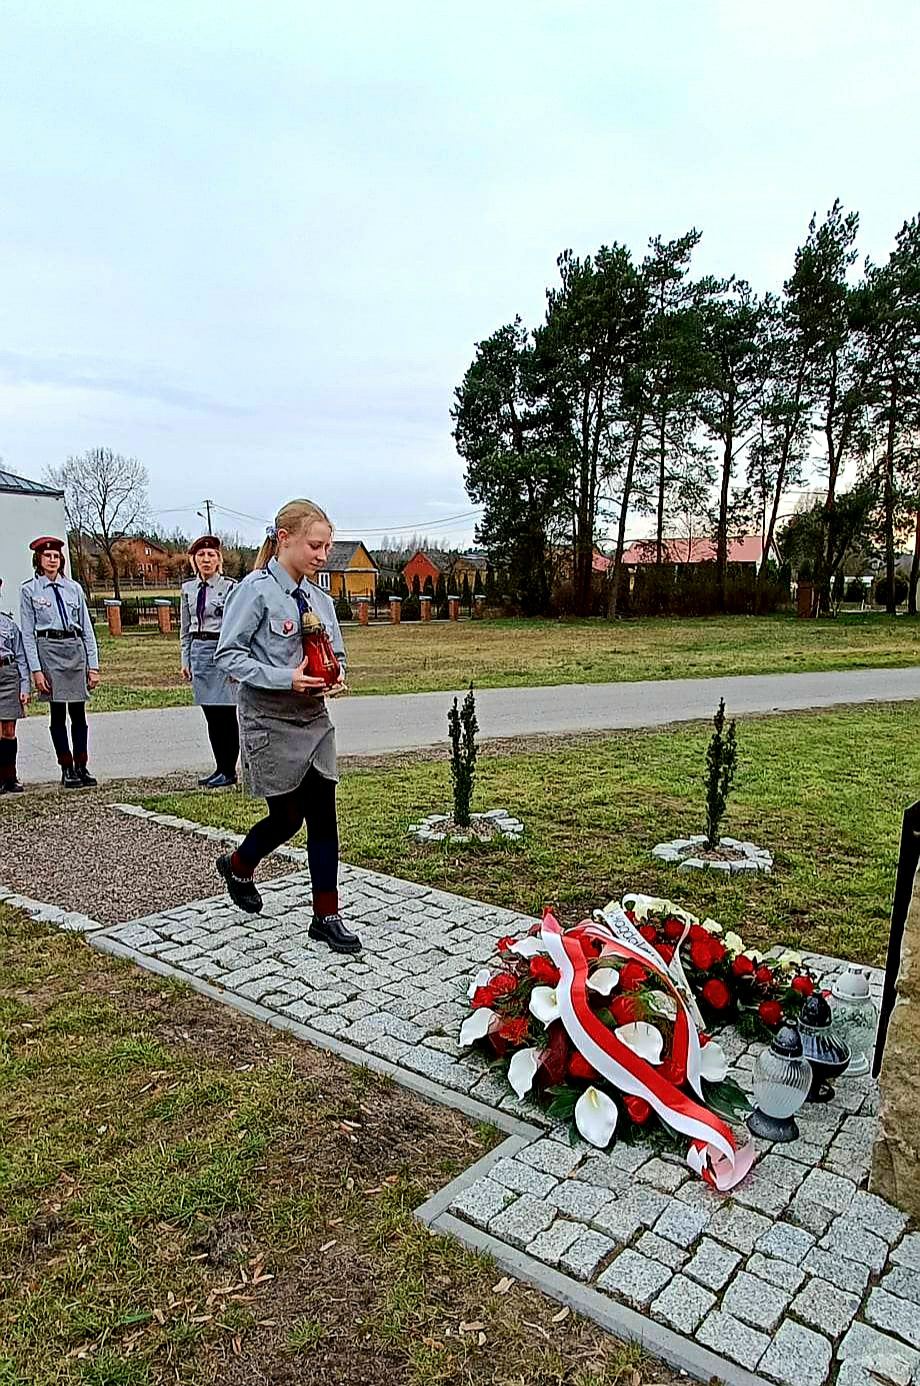 Harcerka składa znicz przy tablicy upamiętniającej Polaków ratujących Żydów pod okupacją niemiecką  w Opoce Dużej